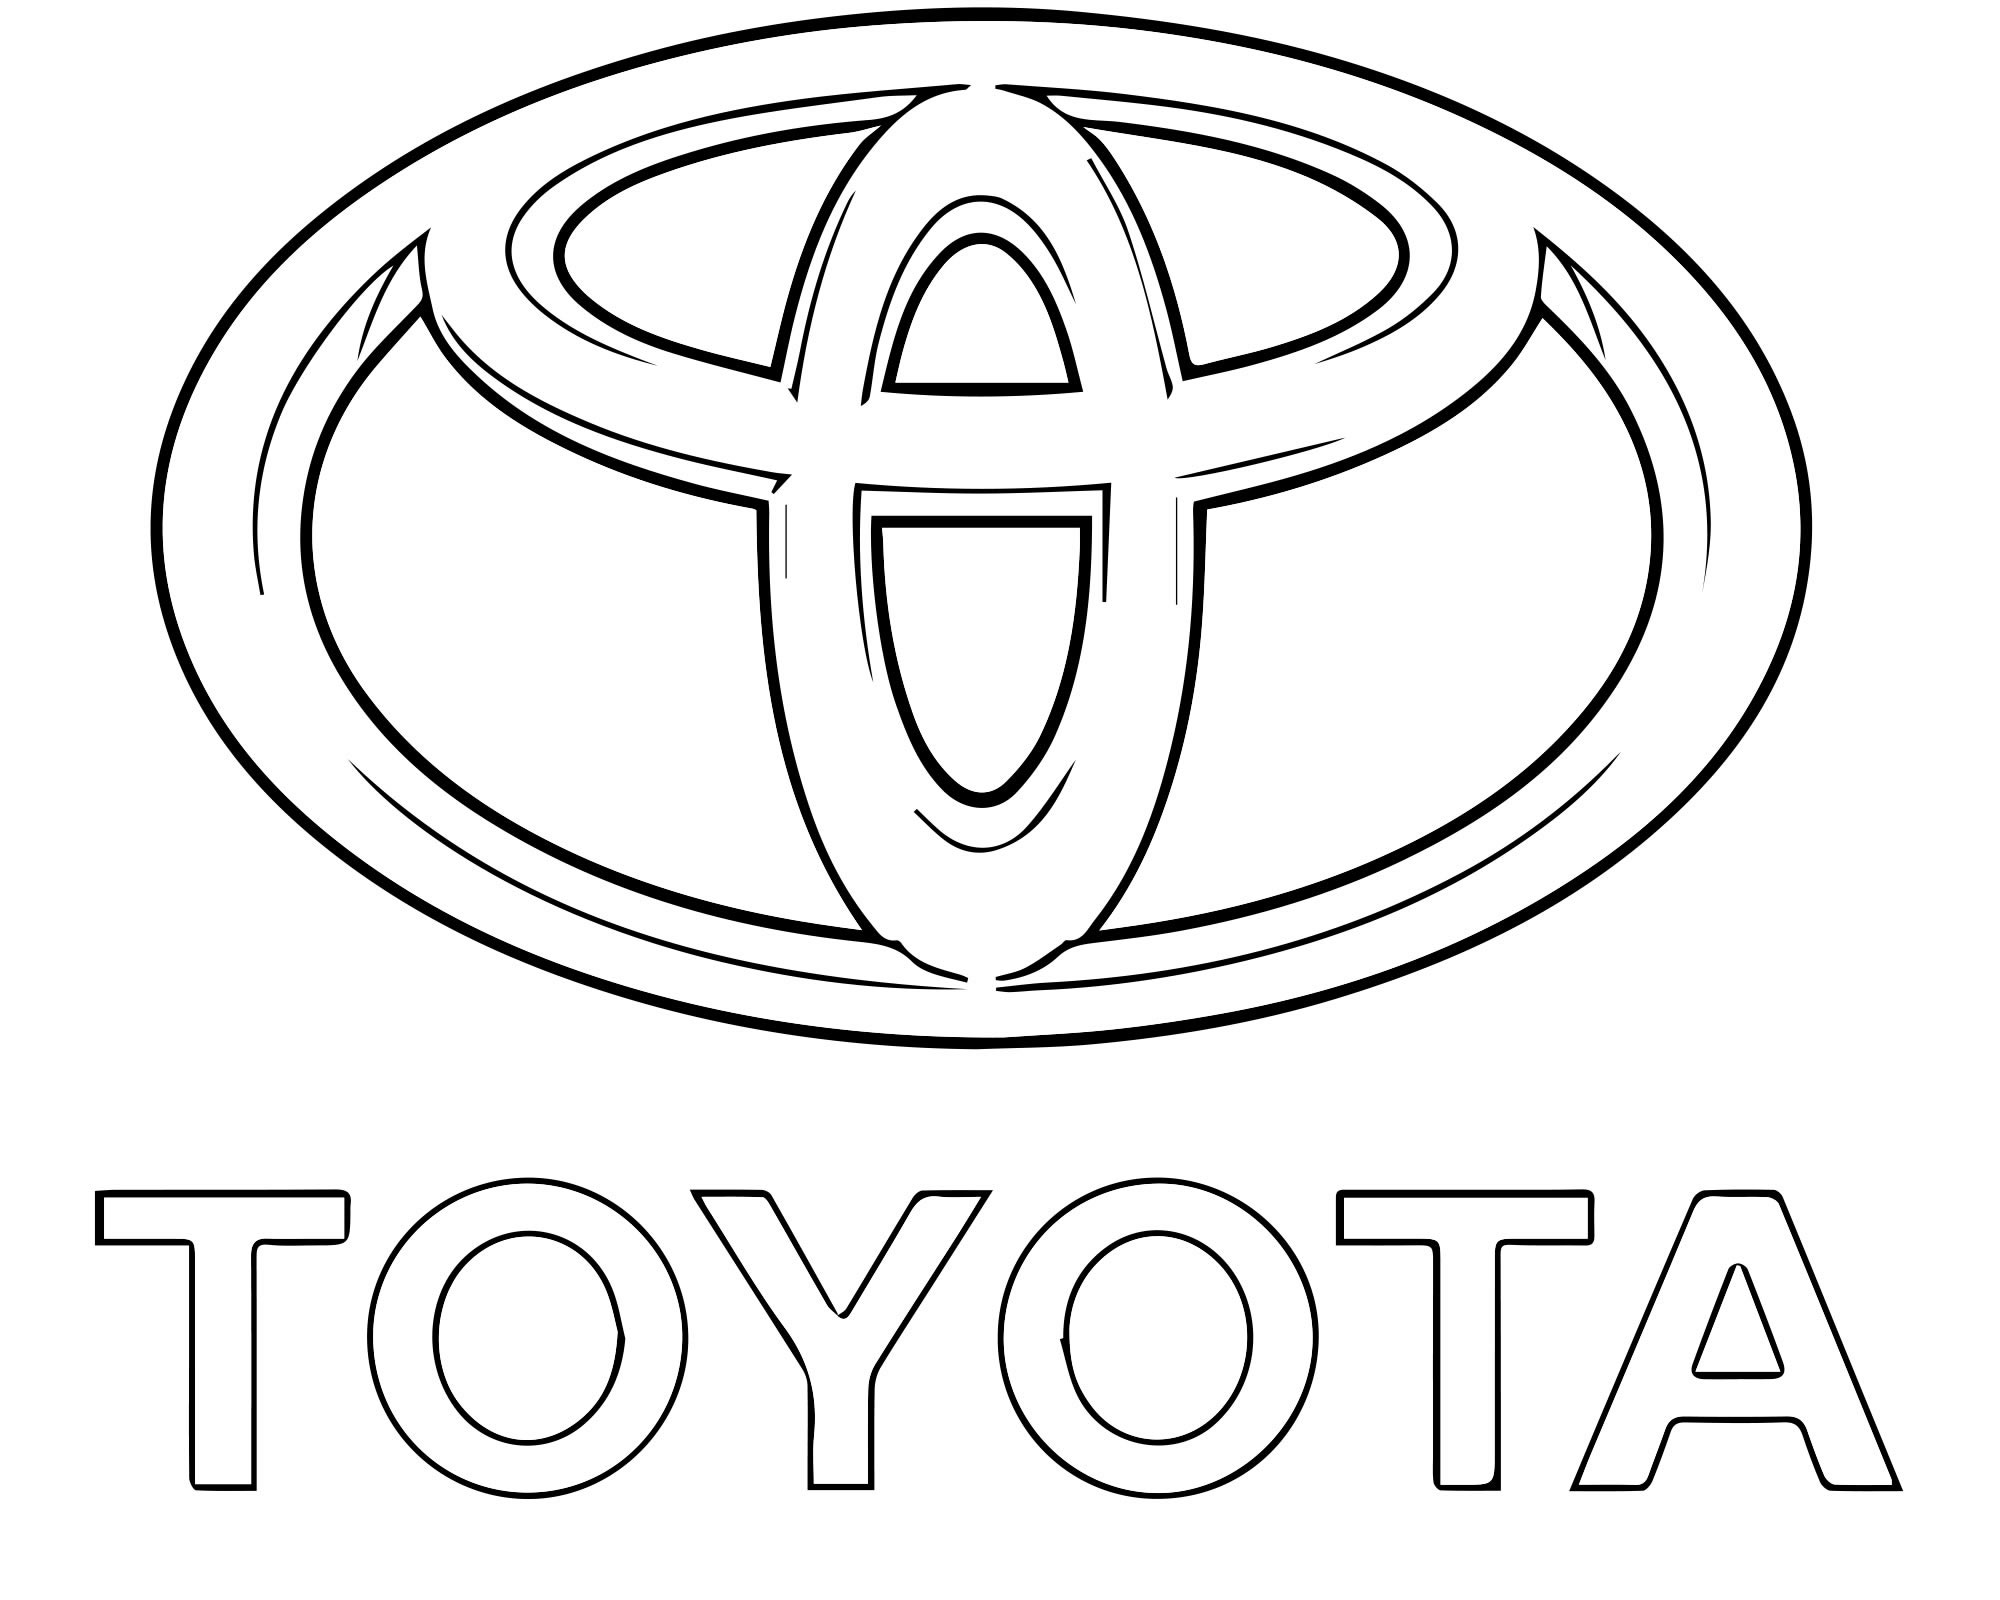 Логотип Тойота раскраска для детей